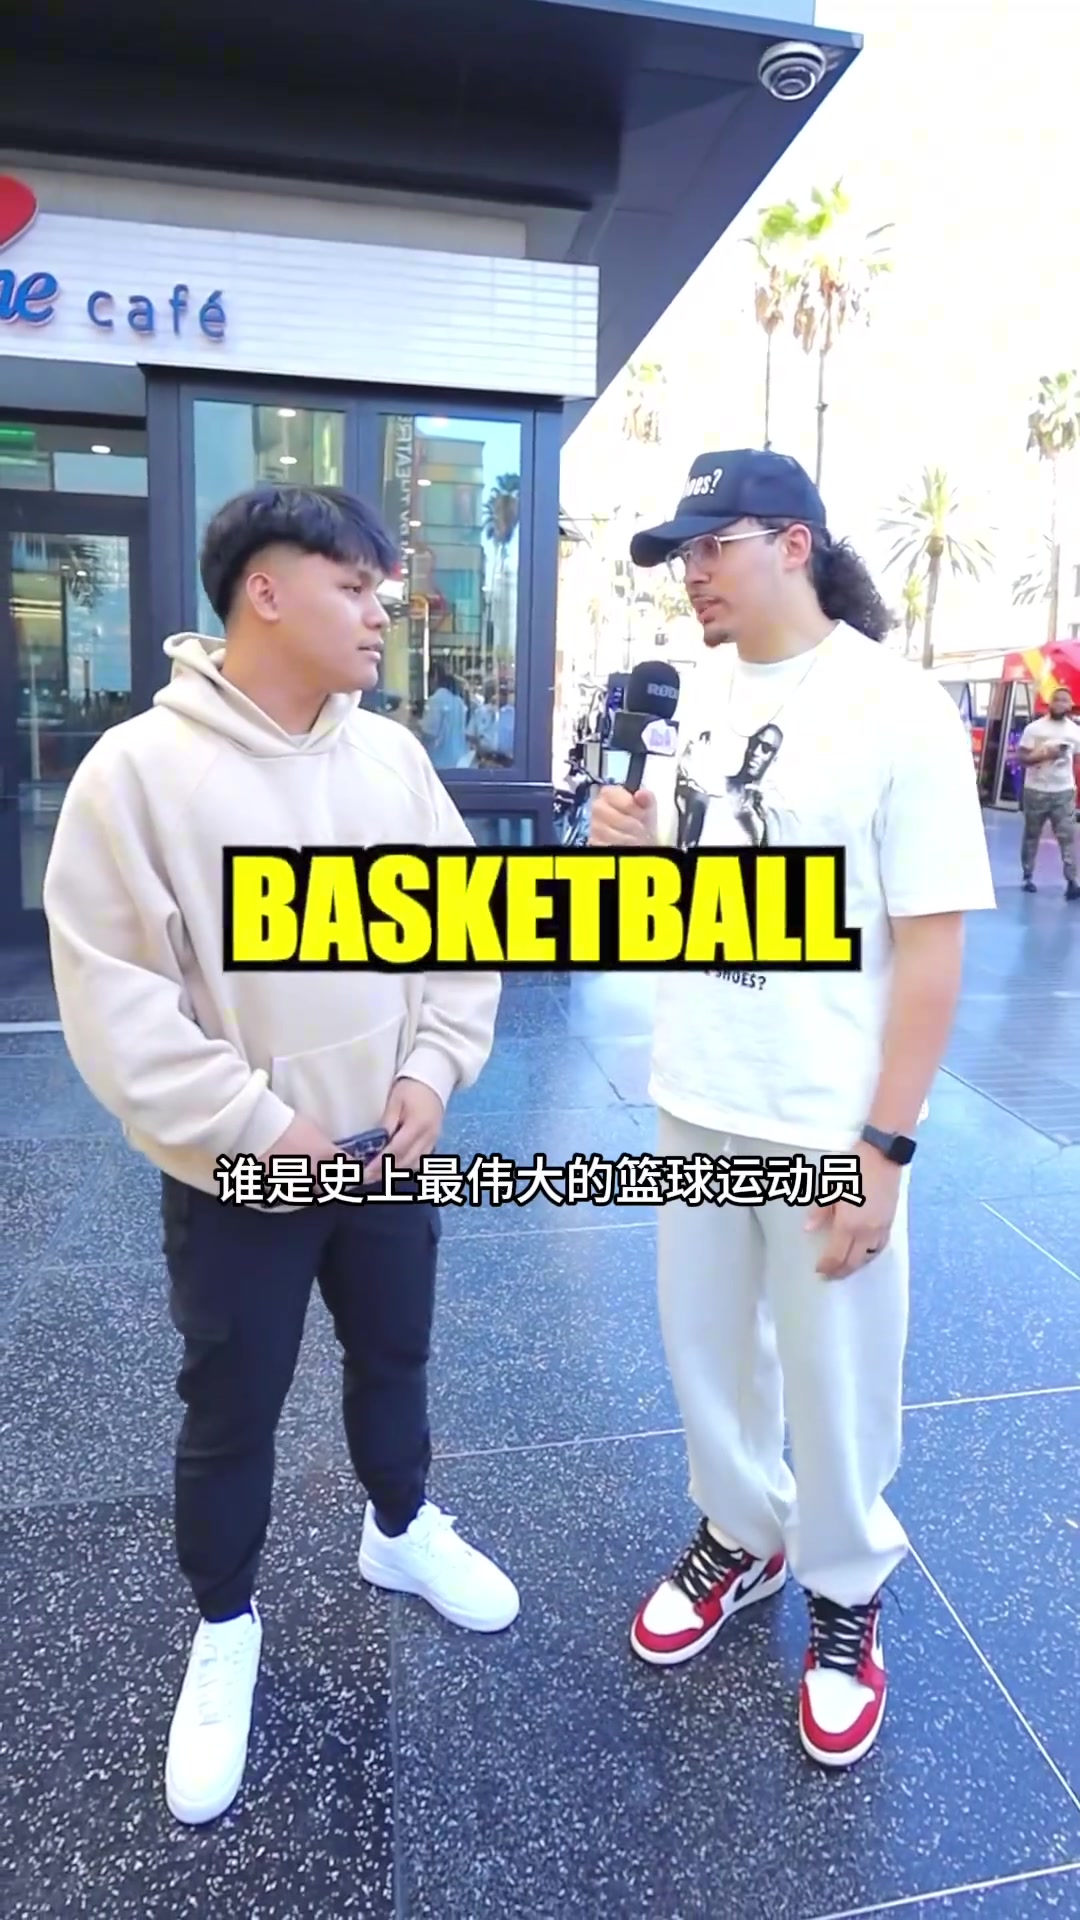 啊哈？街头采访球迷：谁是你的篮球之神，有位老哥说出了普尔的名字